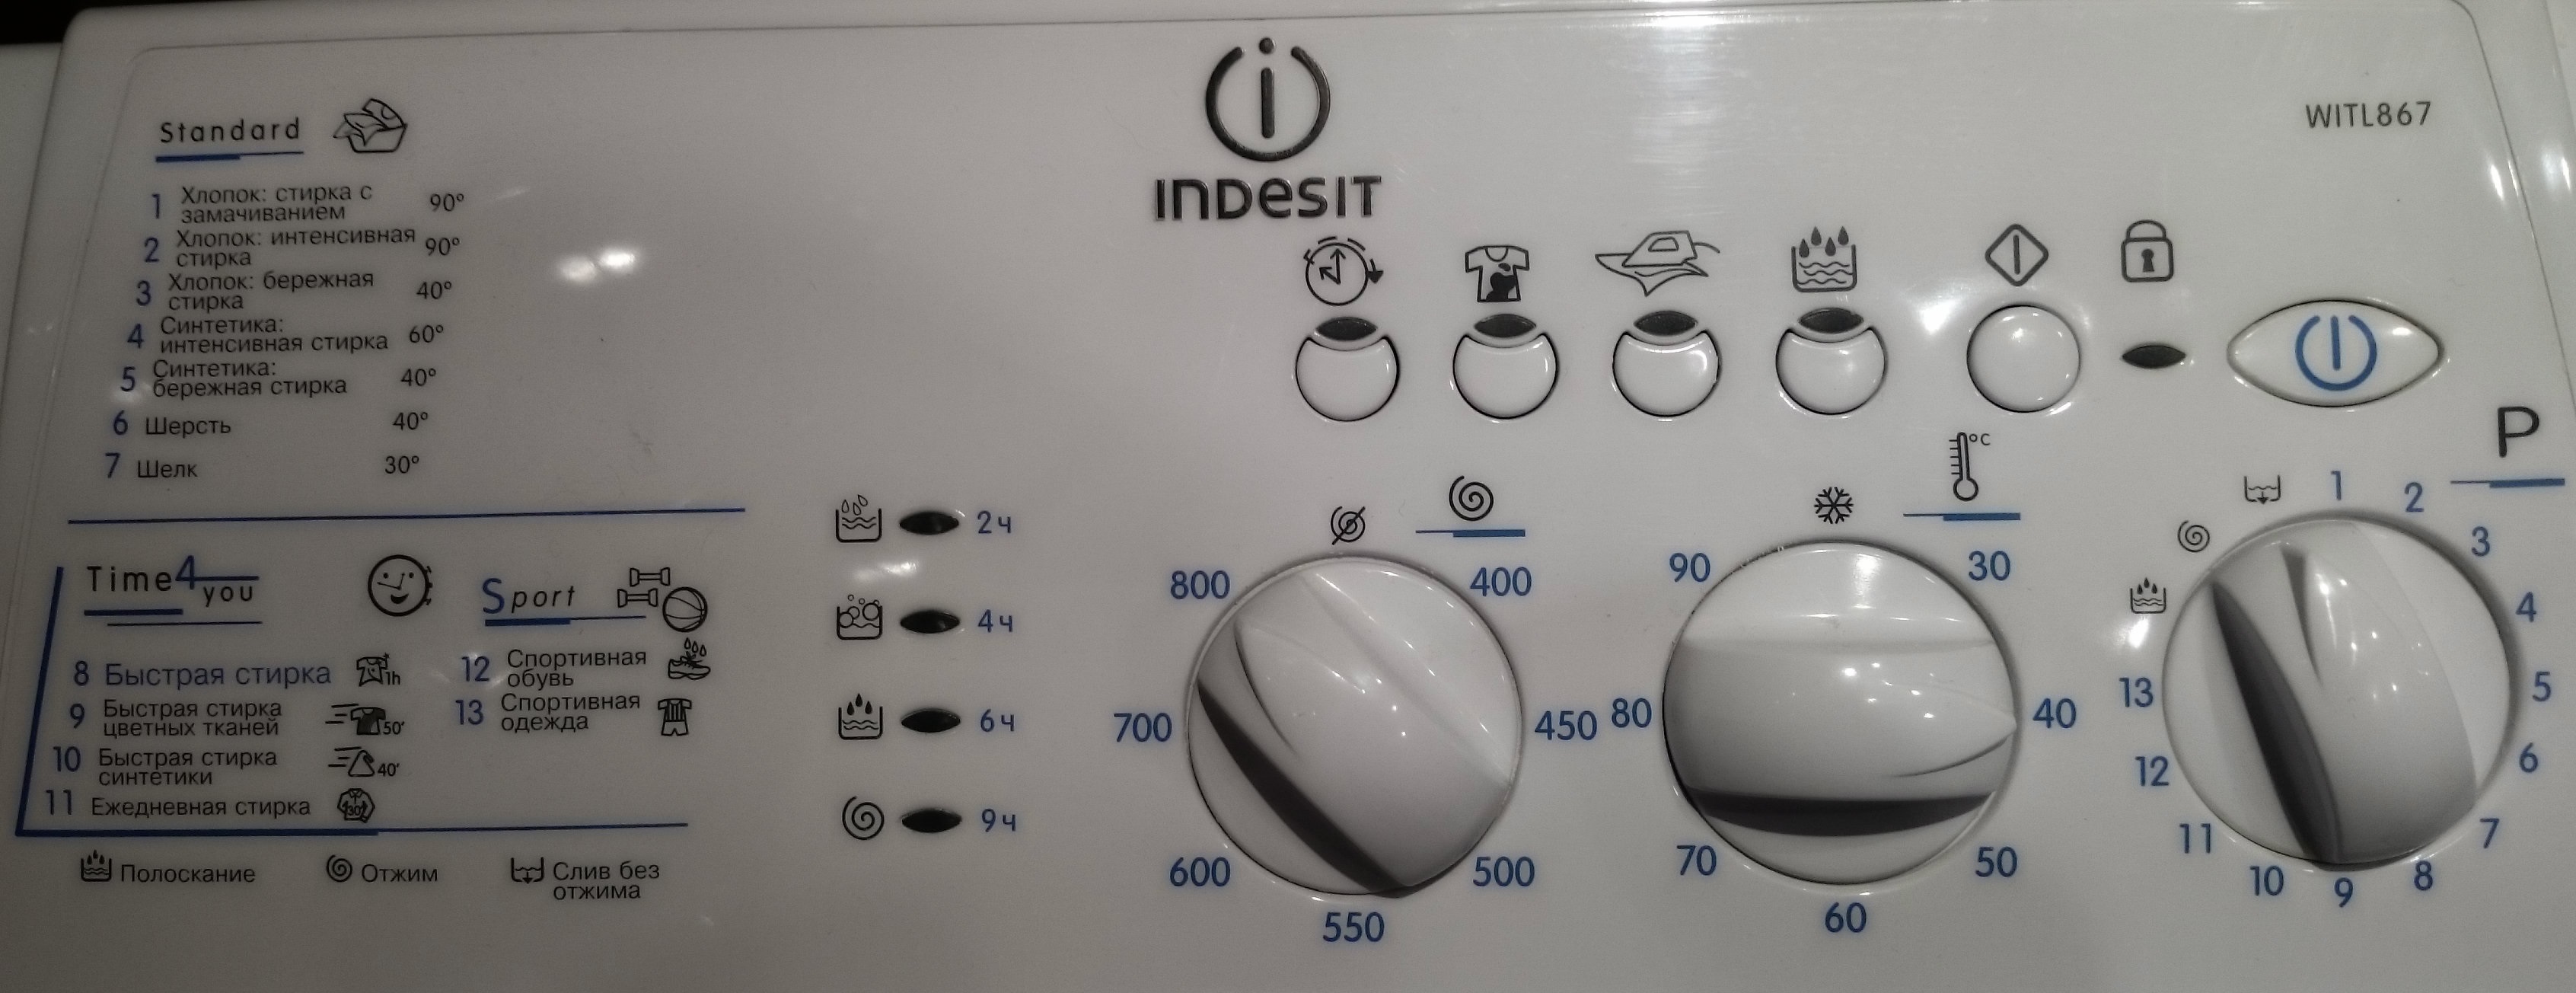 stoppar Indesit-maskinen